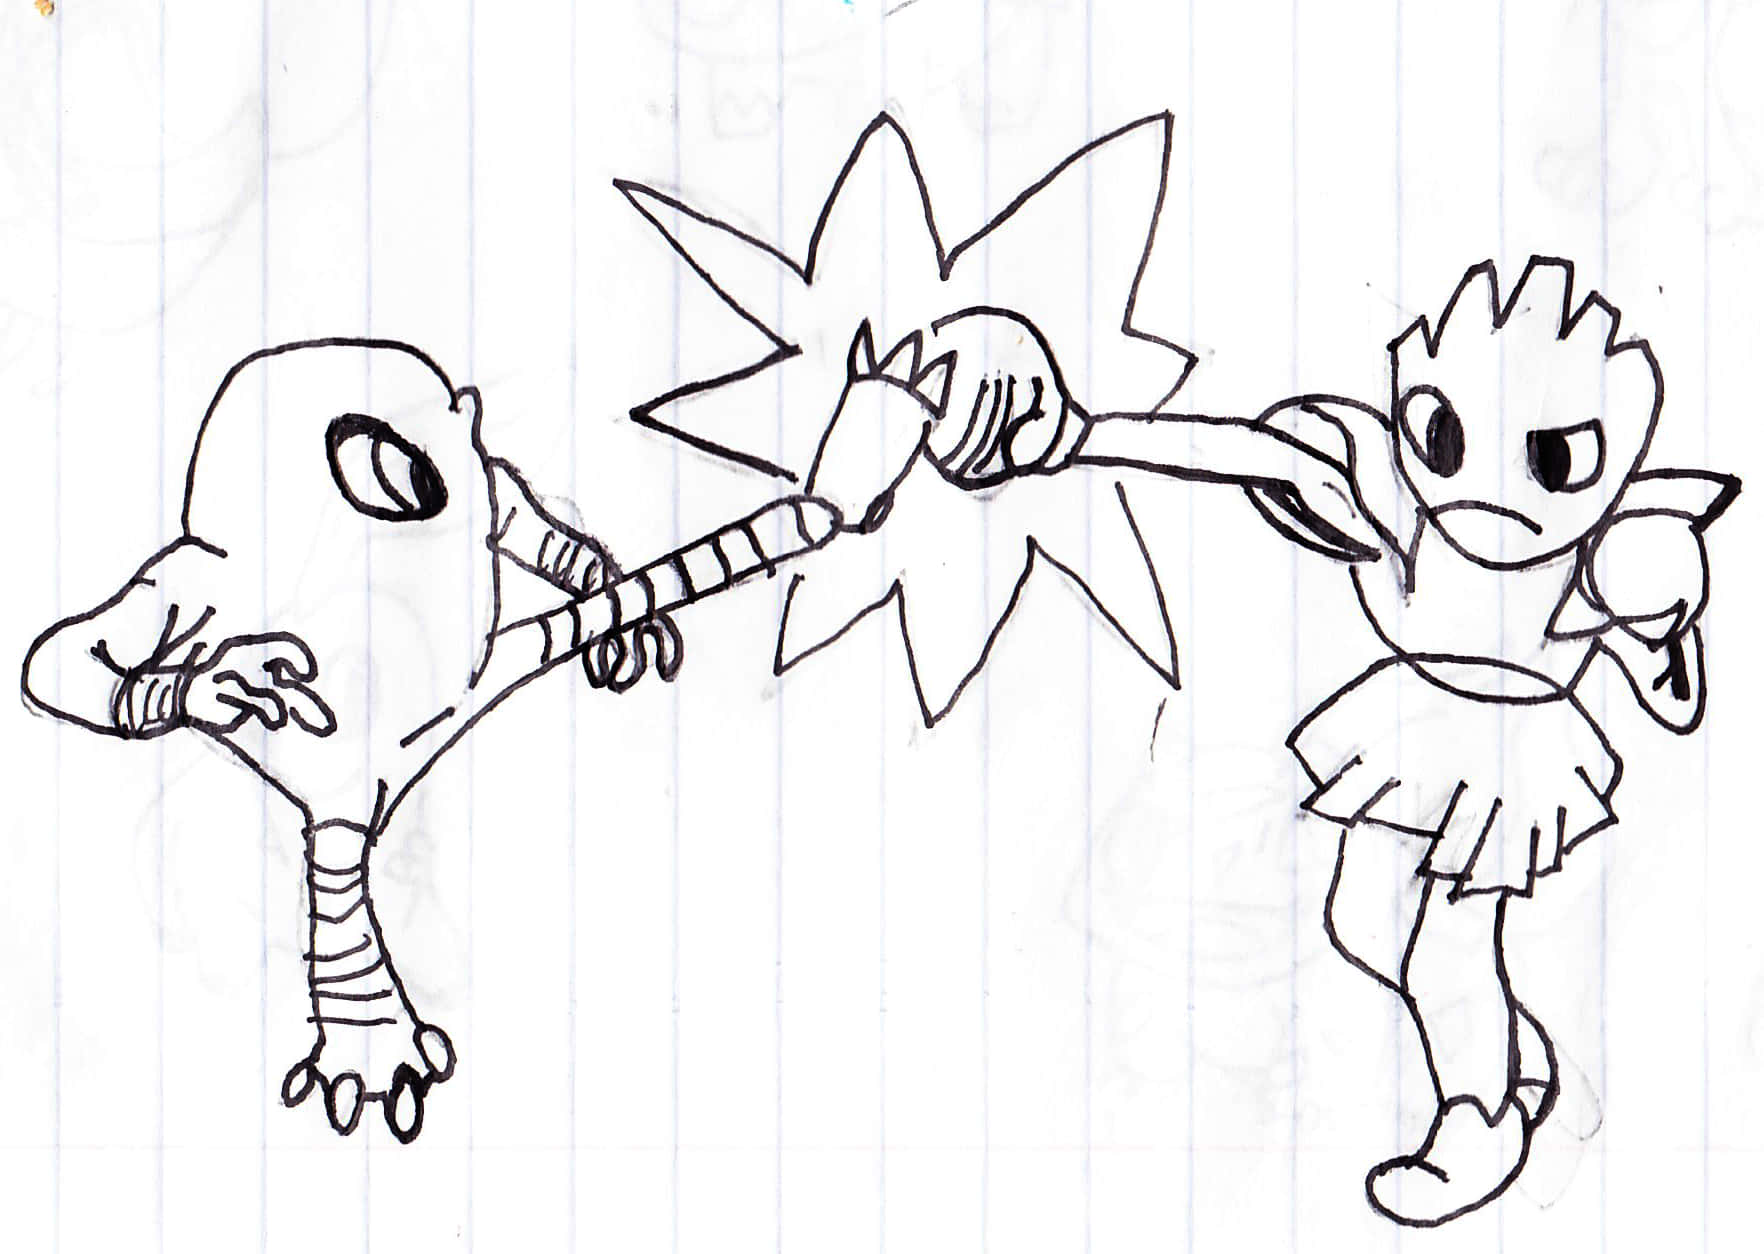 Hitmonchan  Pokemon, Pokemon sketch, Cute pikachu